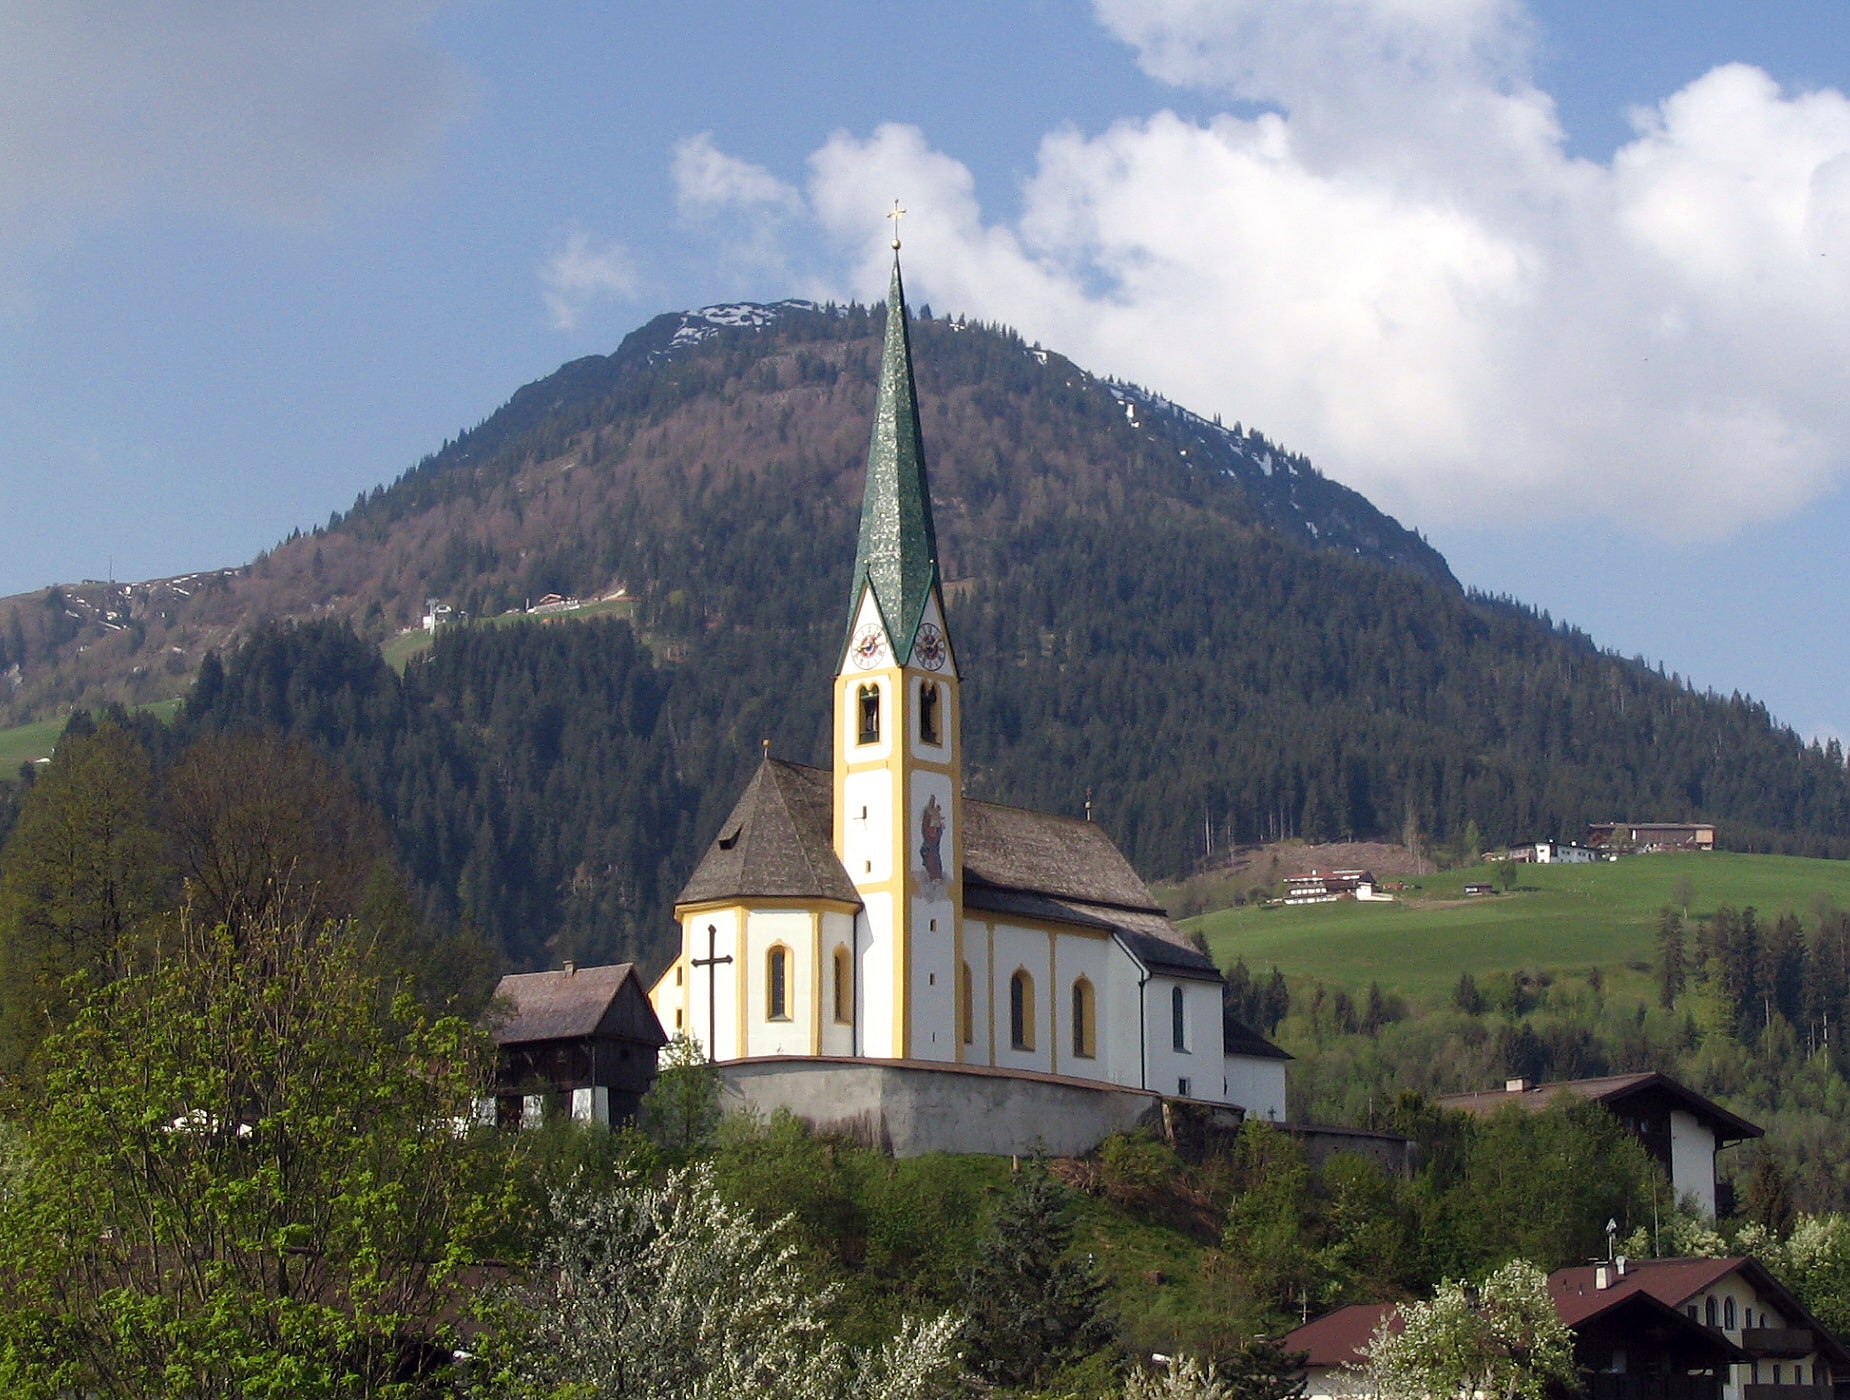 Kirchberg in Tirol, Austria